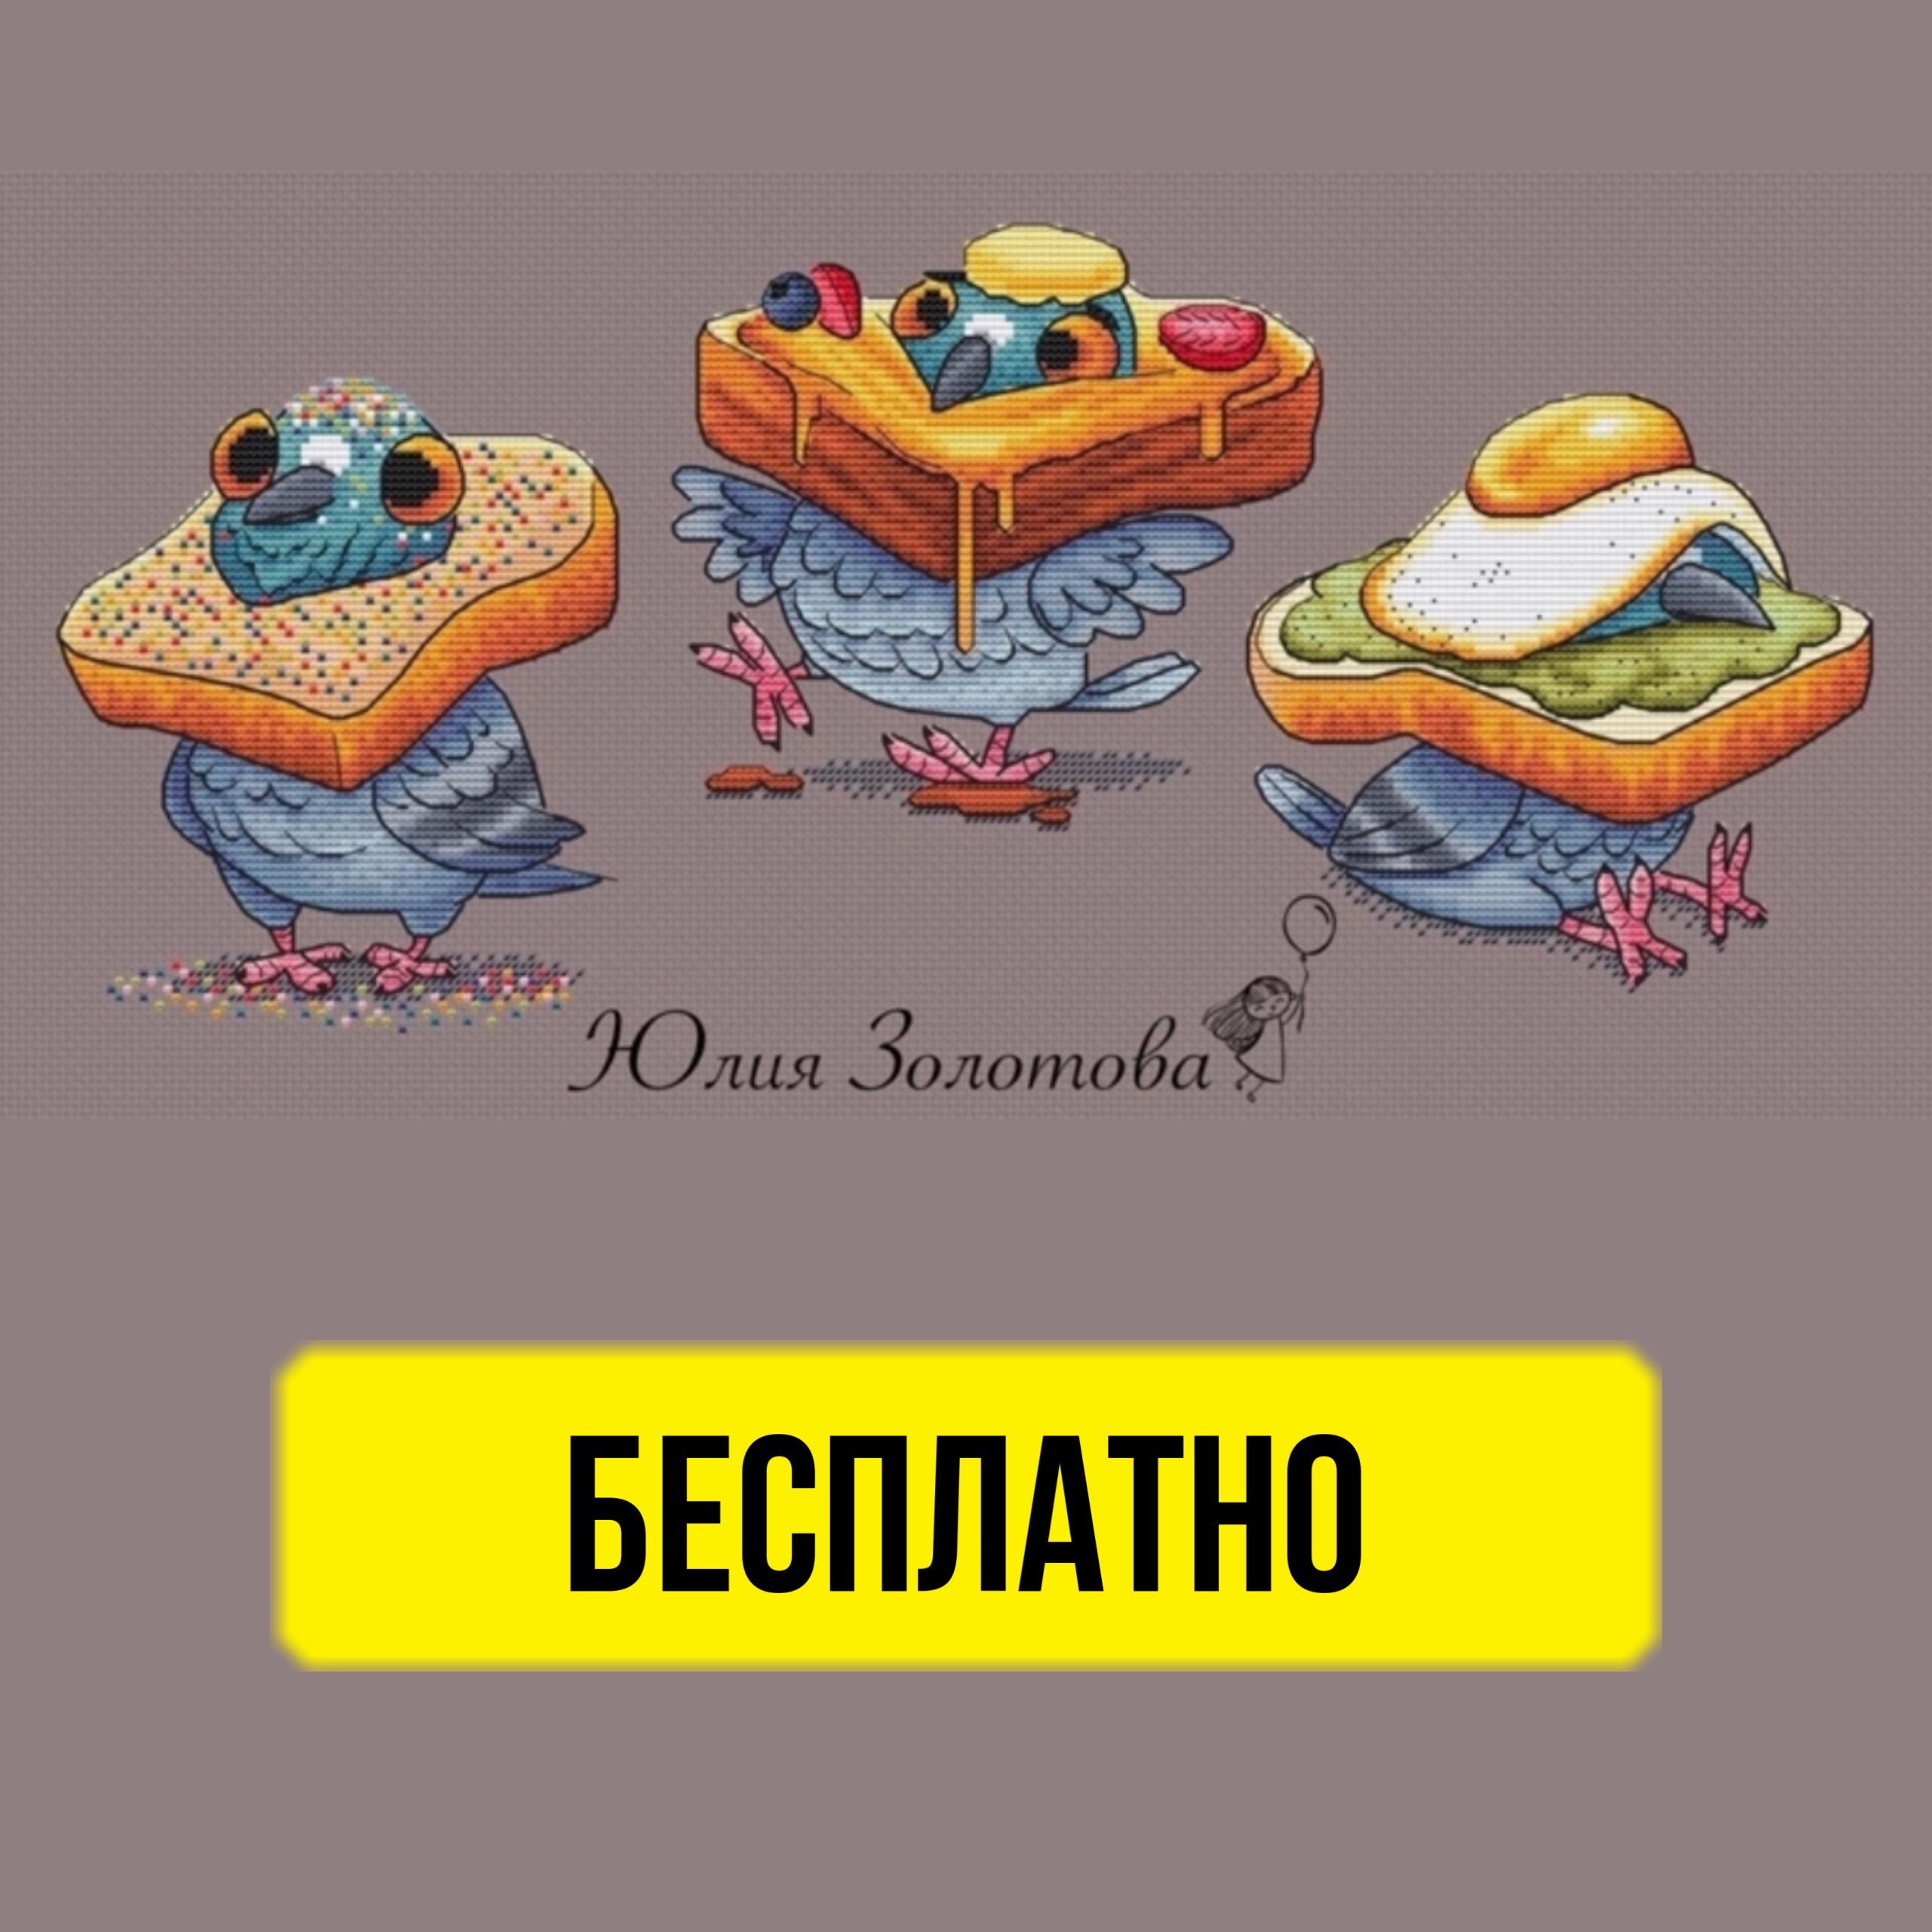 Бесплатная схема вышивки крестом с голубями и хлебом от Юлии Золотовой.